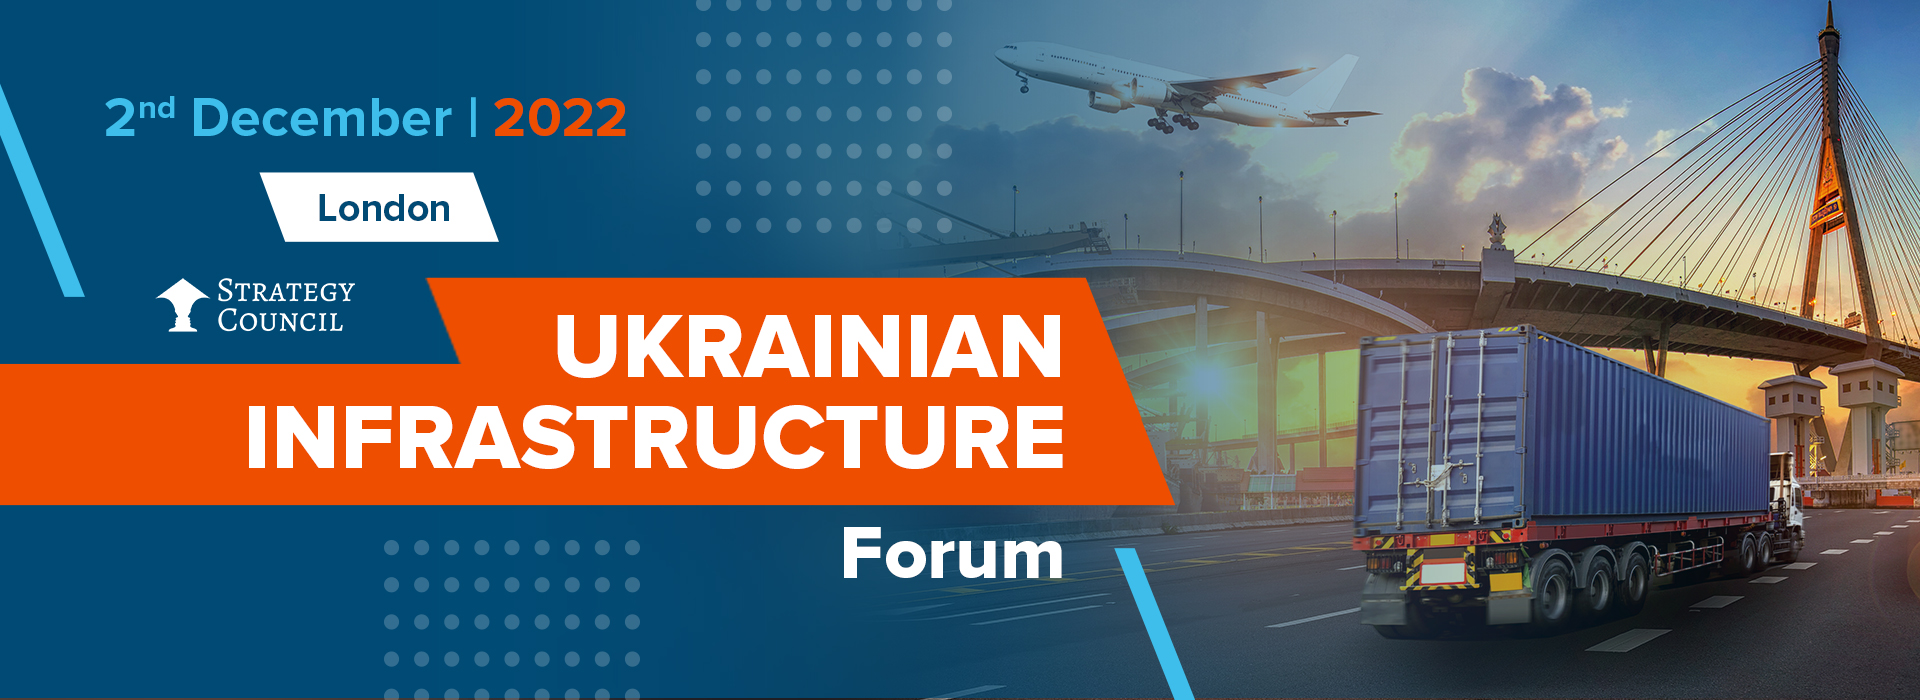 Ukrainian Infrastructure Forum